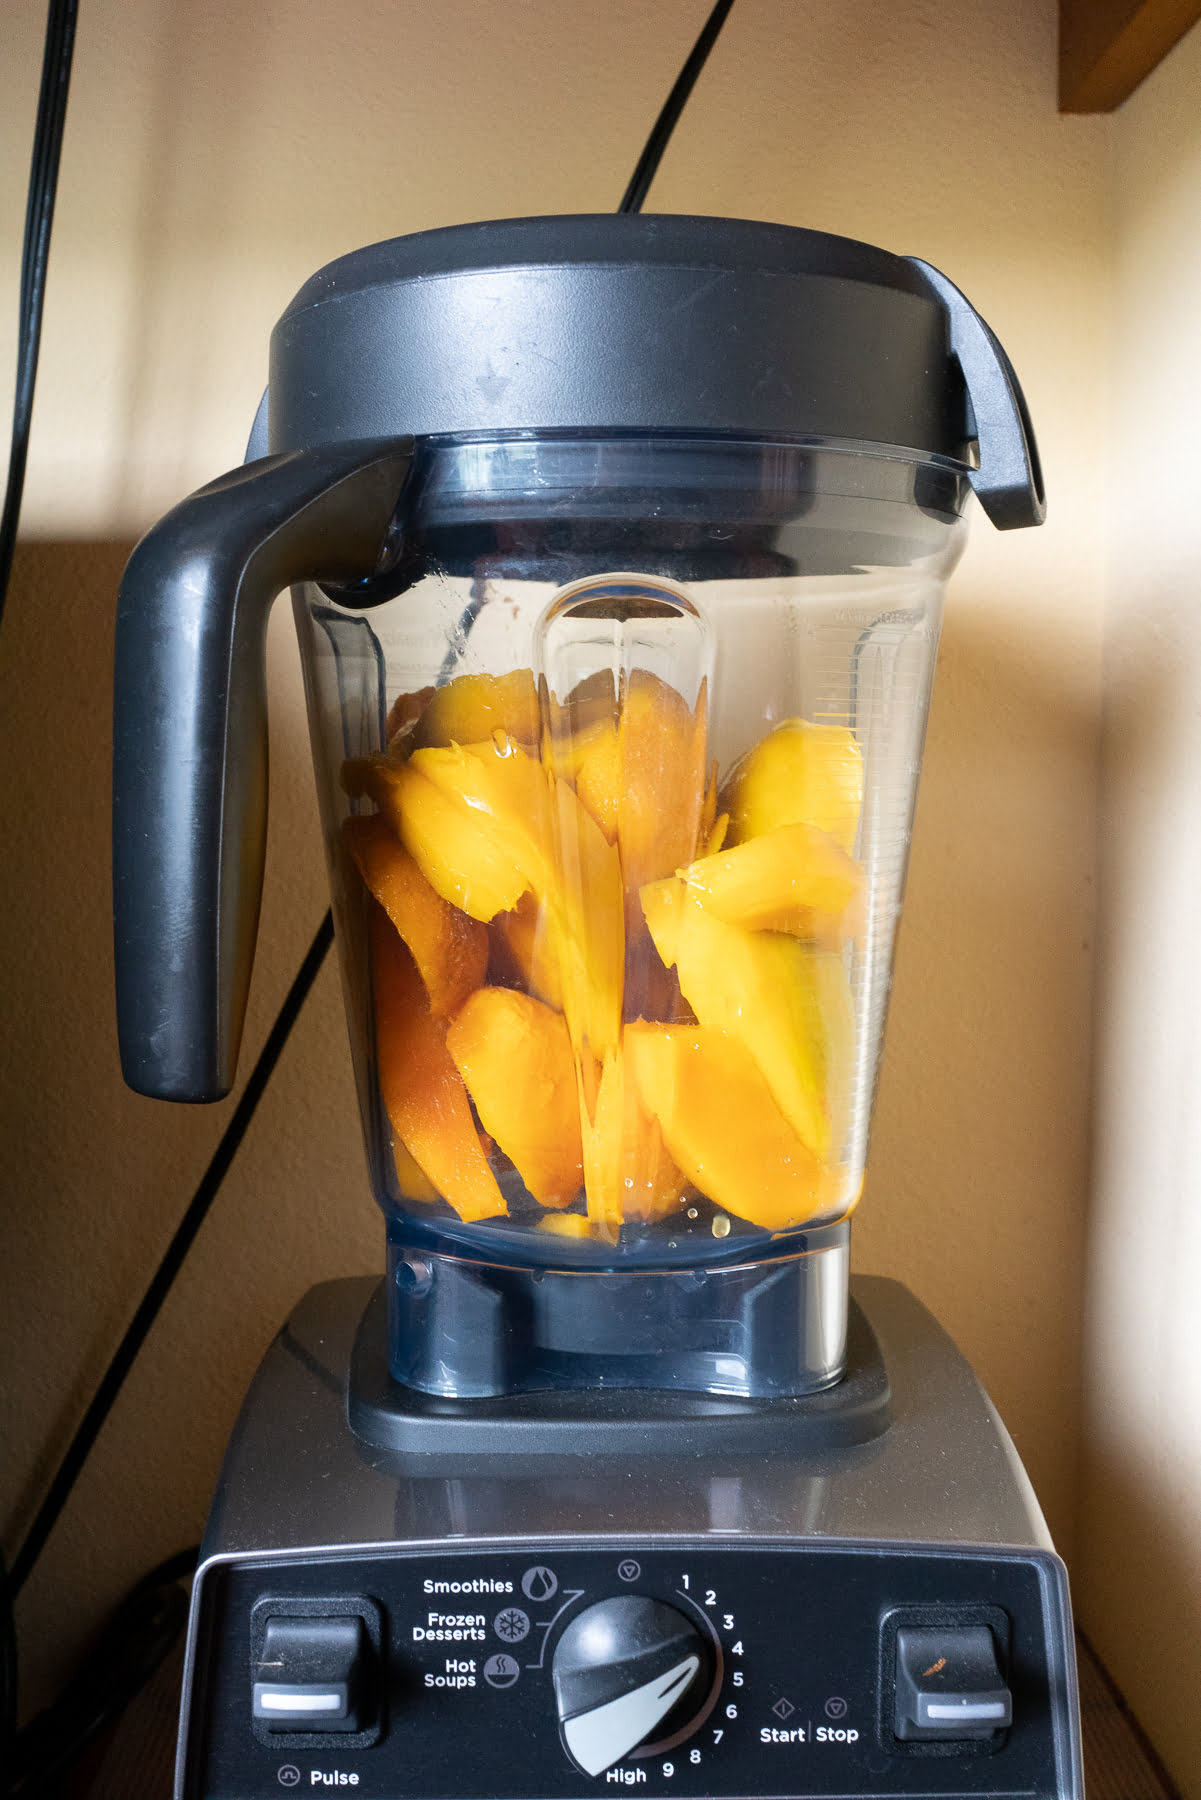 Blending fresh mangos to make mango puree.